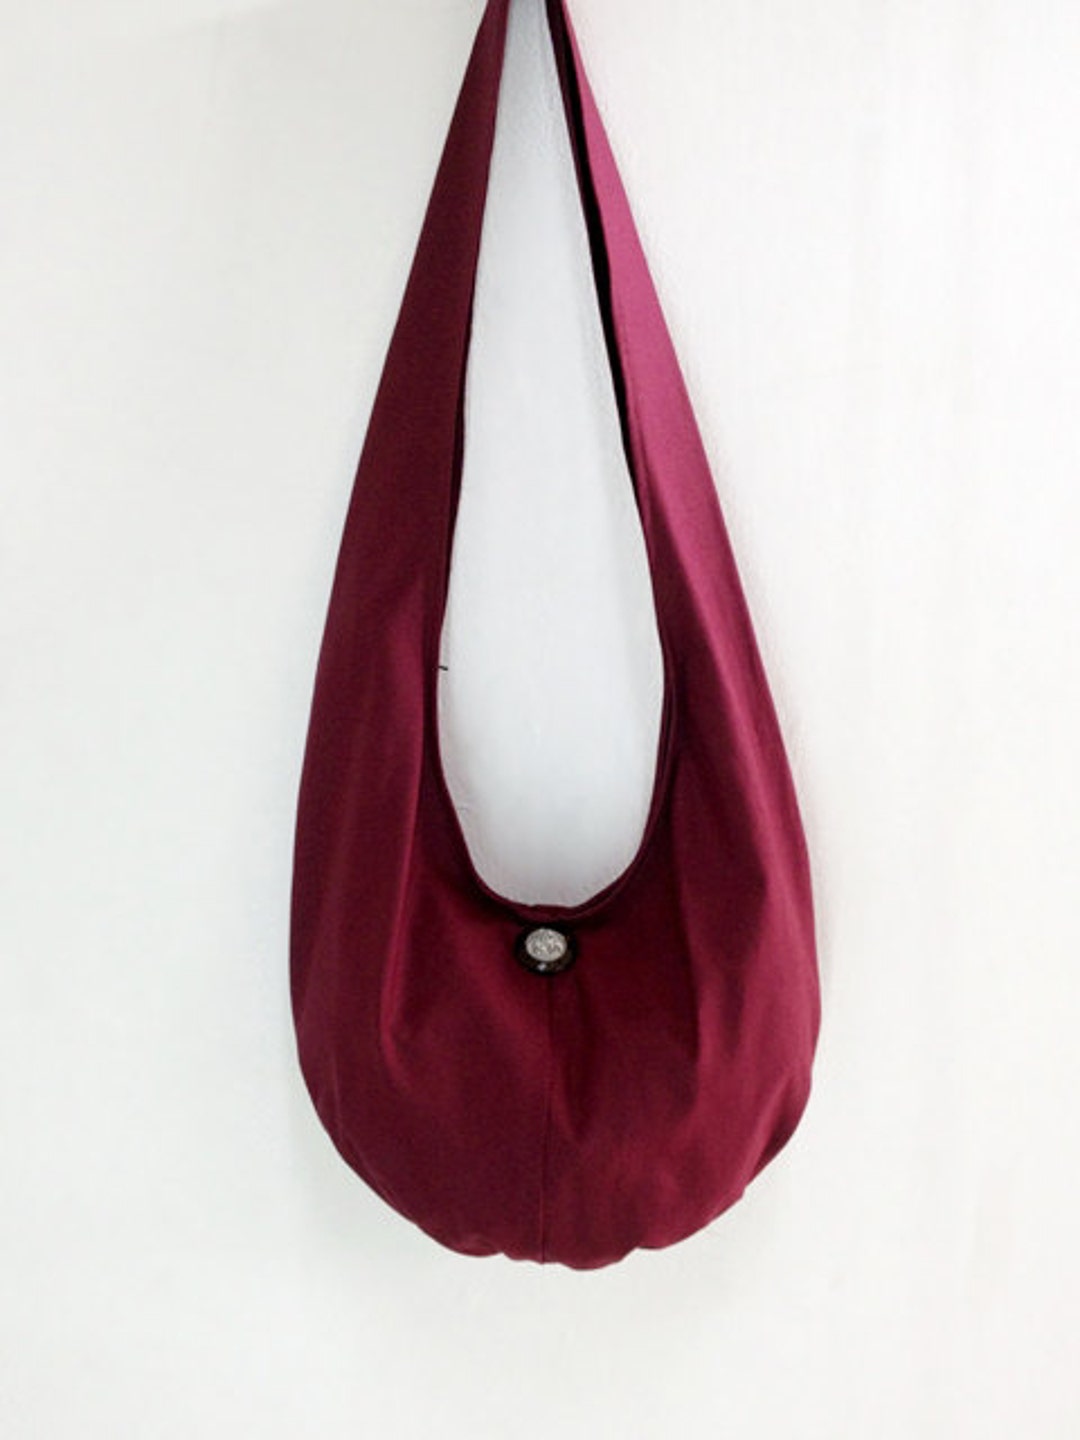 Handbags Canvas Bag Shoulder Bag Sling Bag Hobo Bag Boho Bag - Etsy